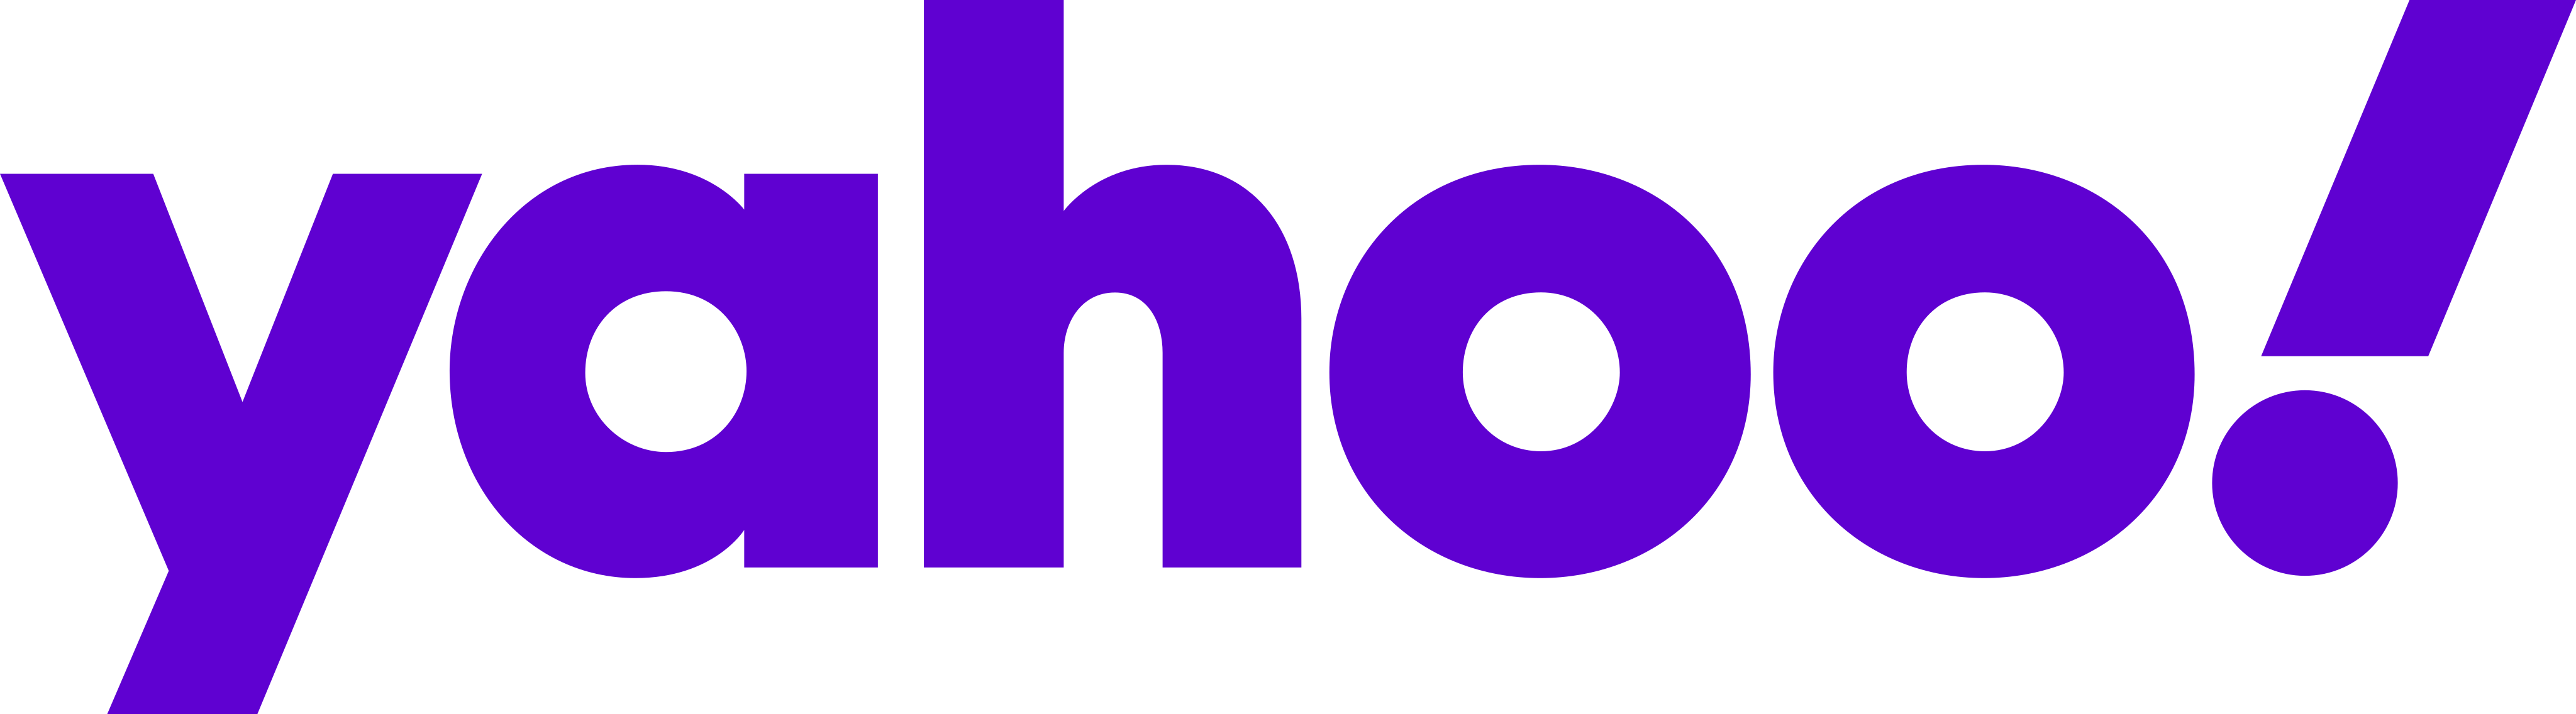 Yahoo Logo PNG - Free Transparent PNG Logos